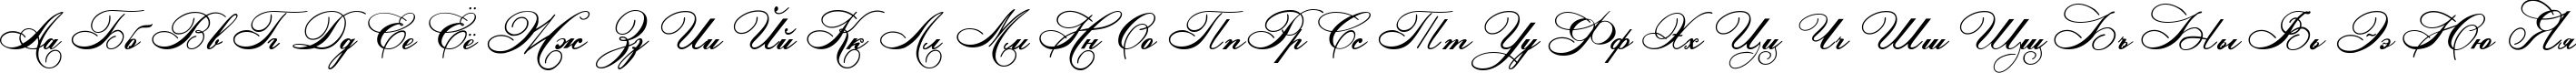 Пример написания русского алфавита шрифтом Ludvig van Bethoveen